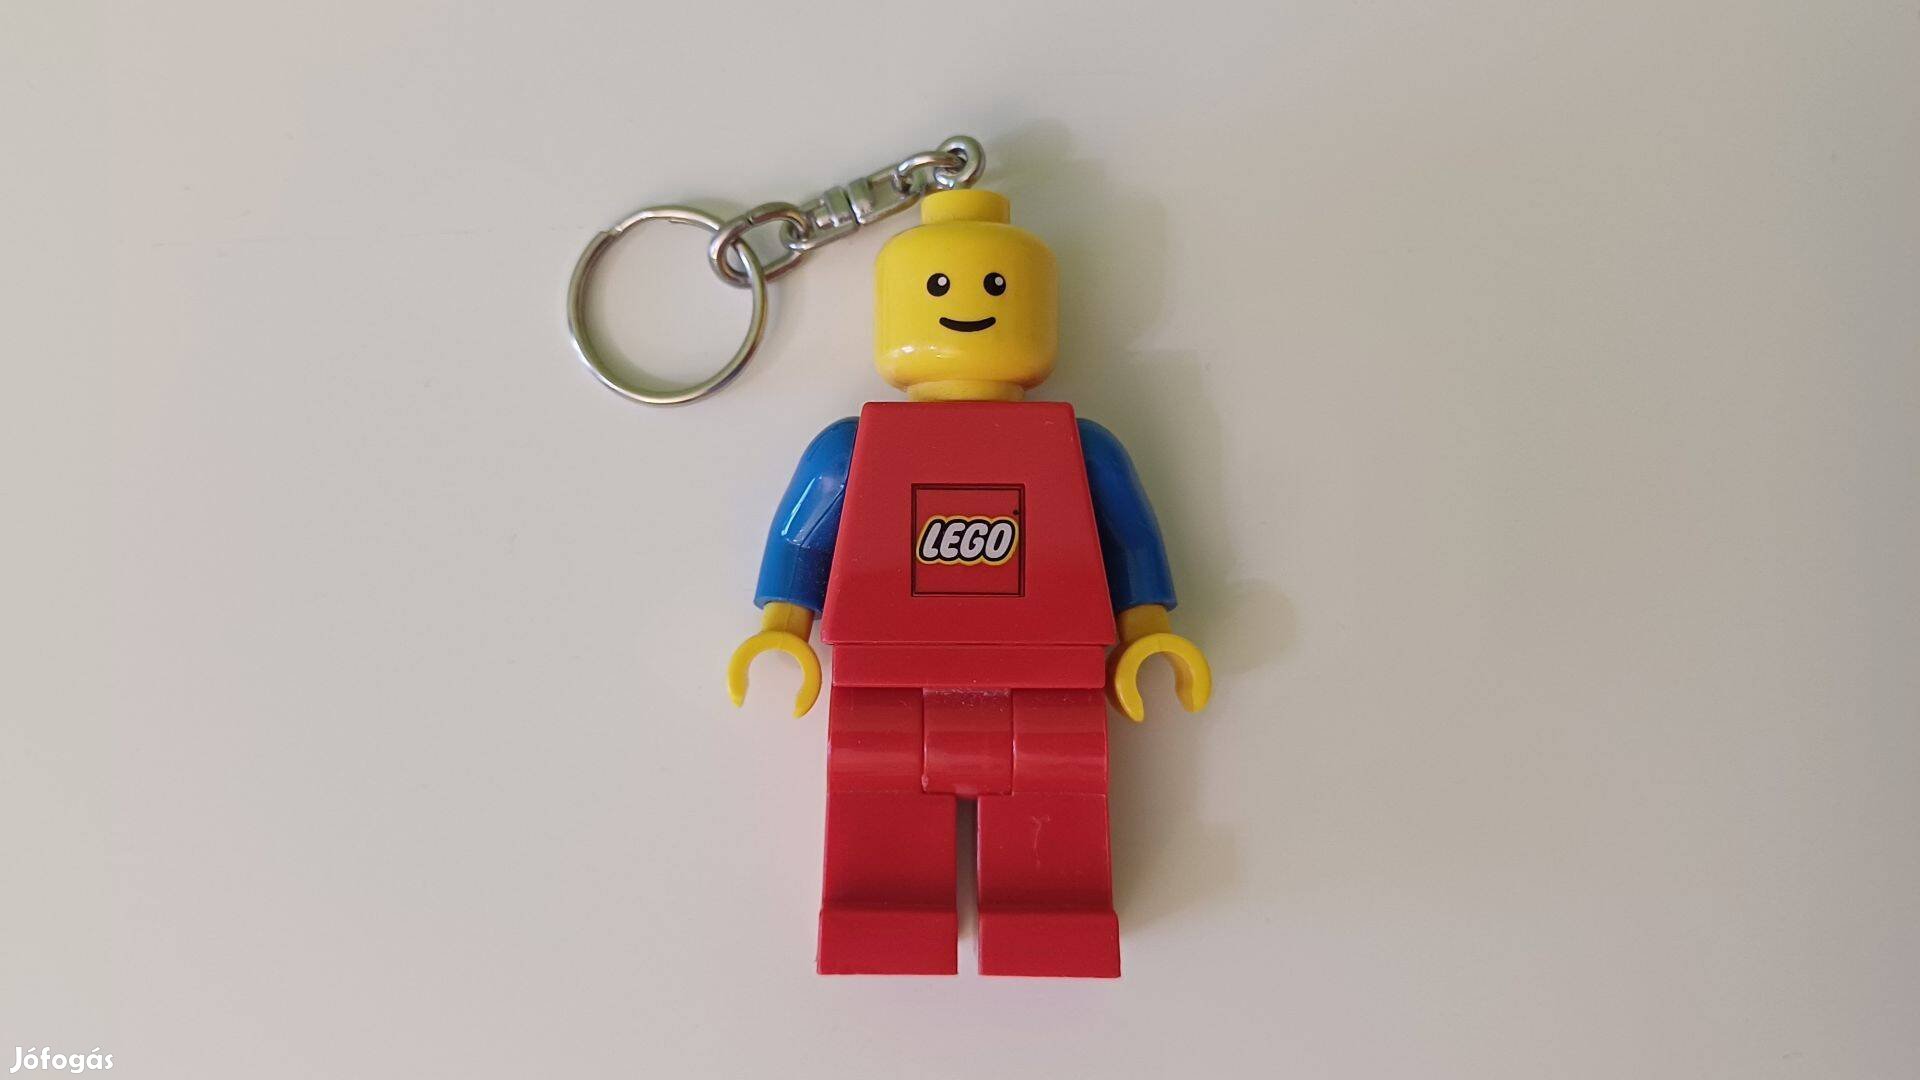 LEGO világító újszerű minifigura kulcstartó